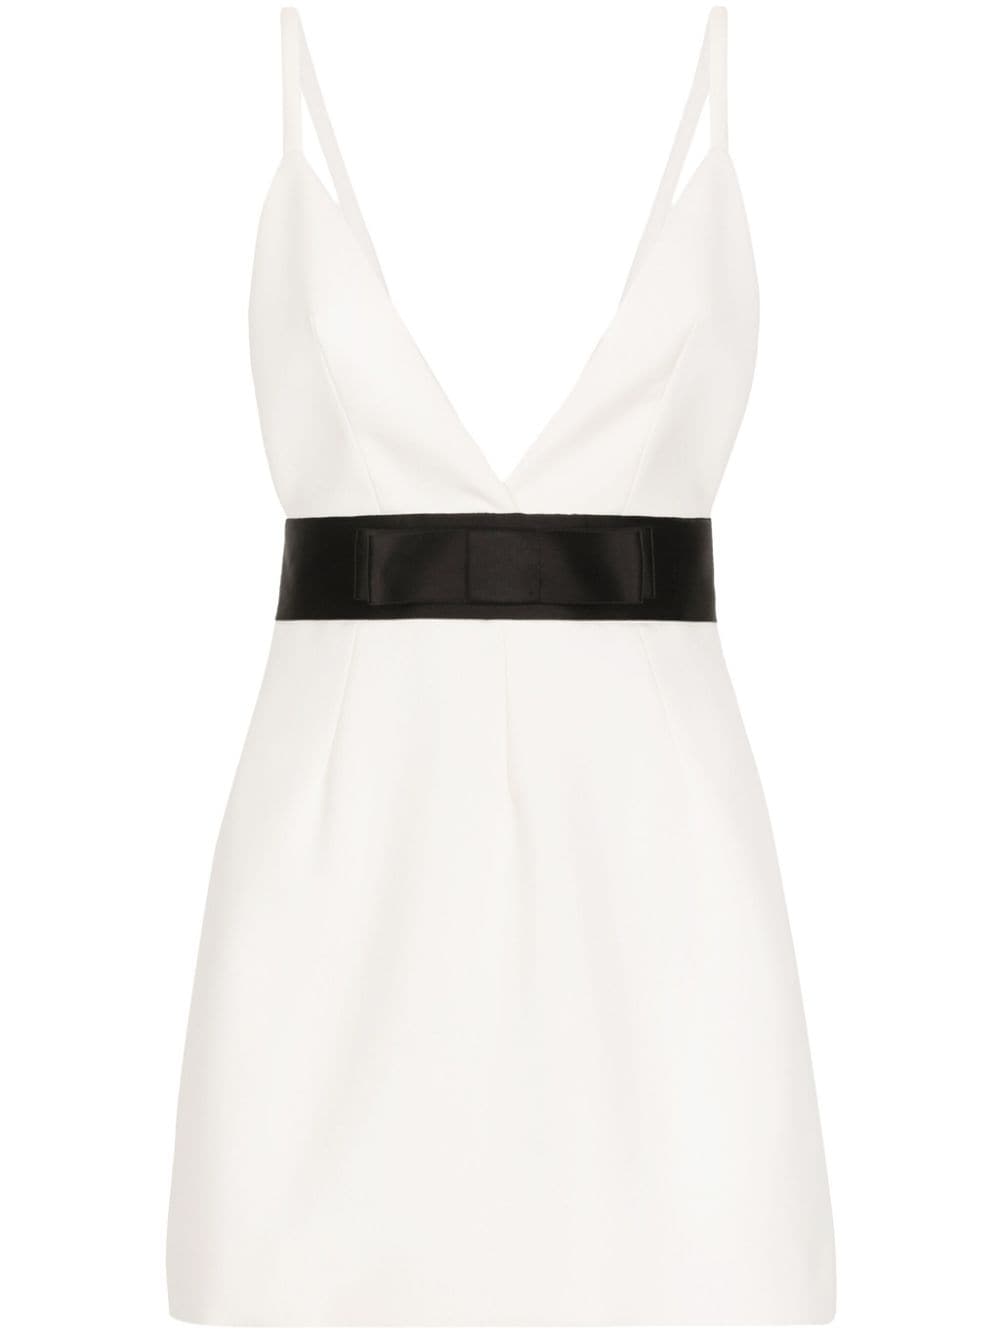 White mini dress